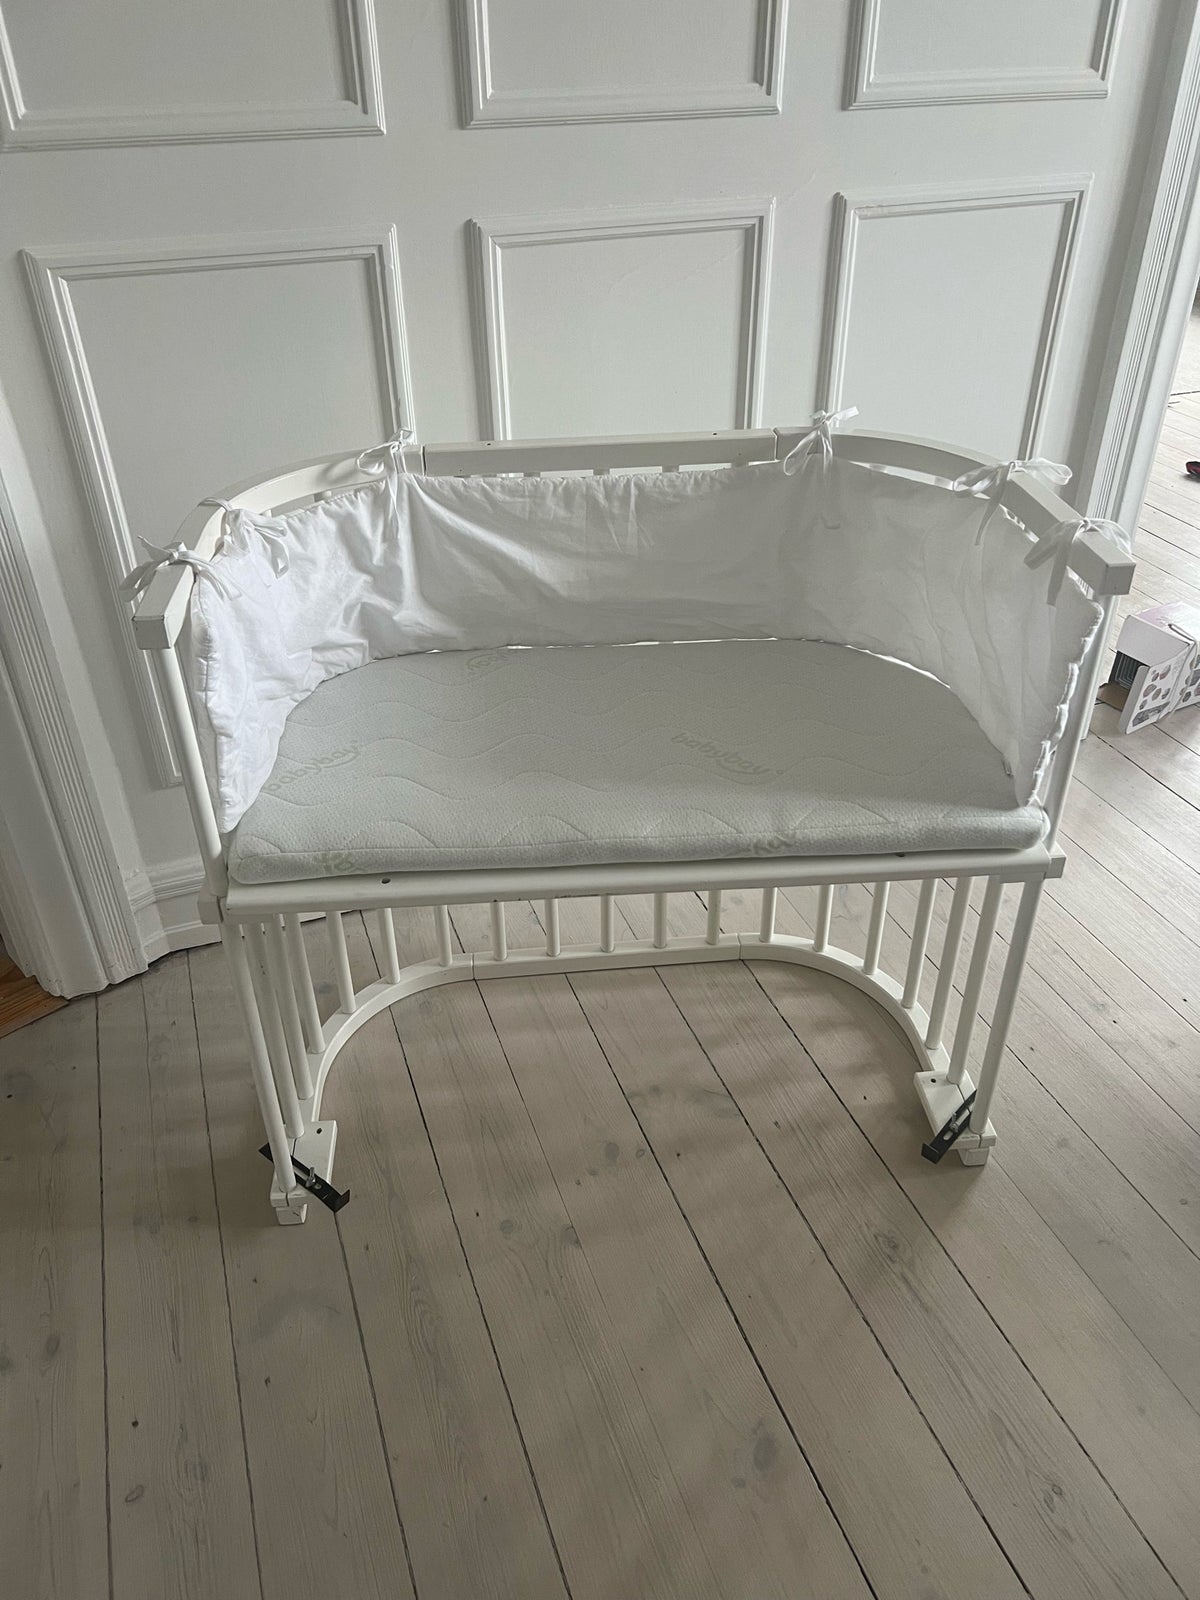 Babyseng, Babybay bedside crib, b: 46 cm l: 88 cm